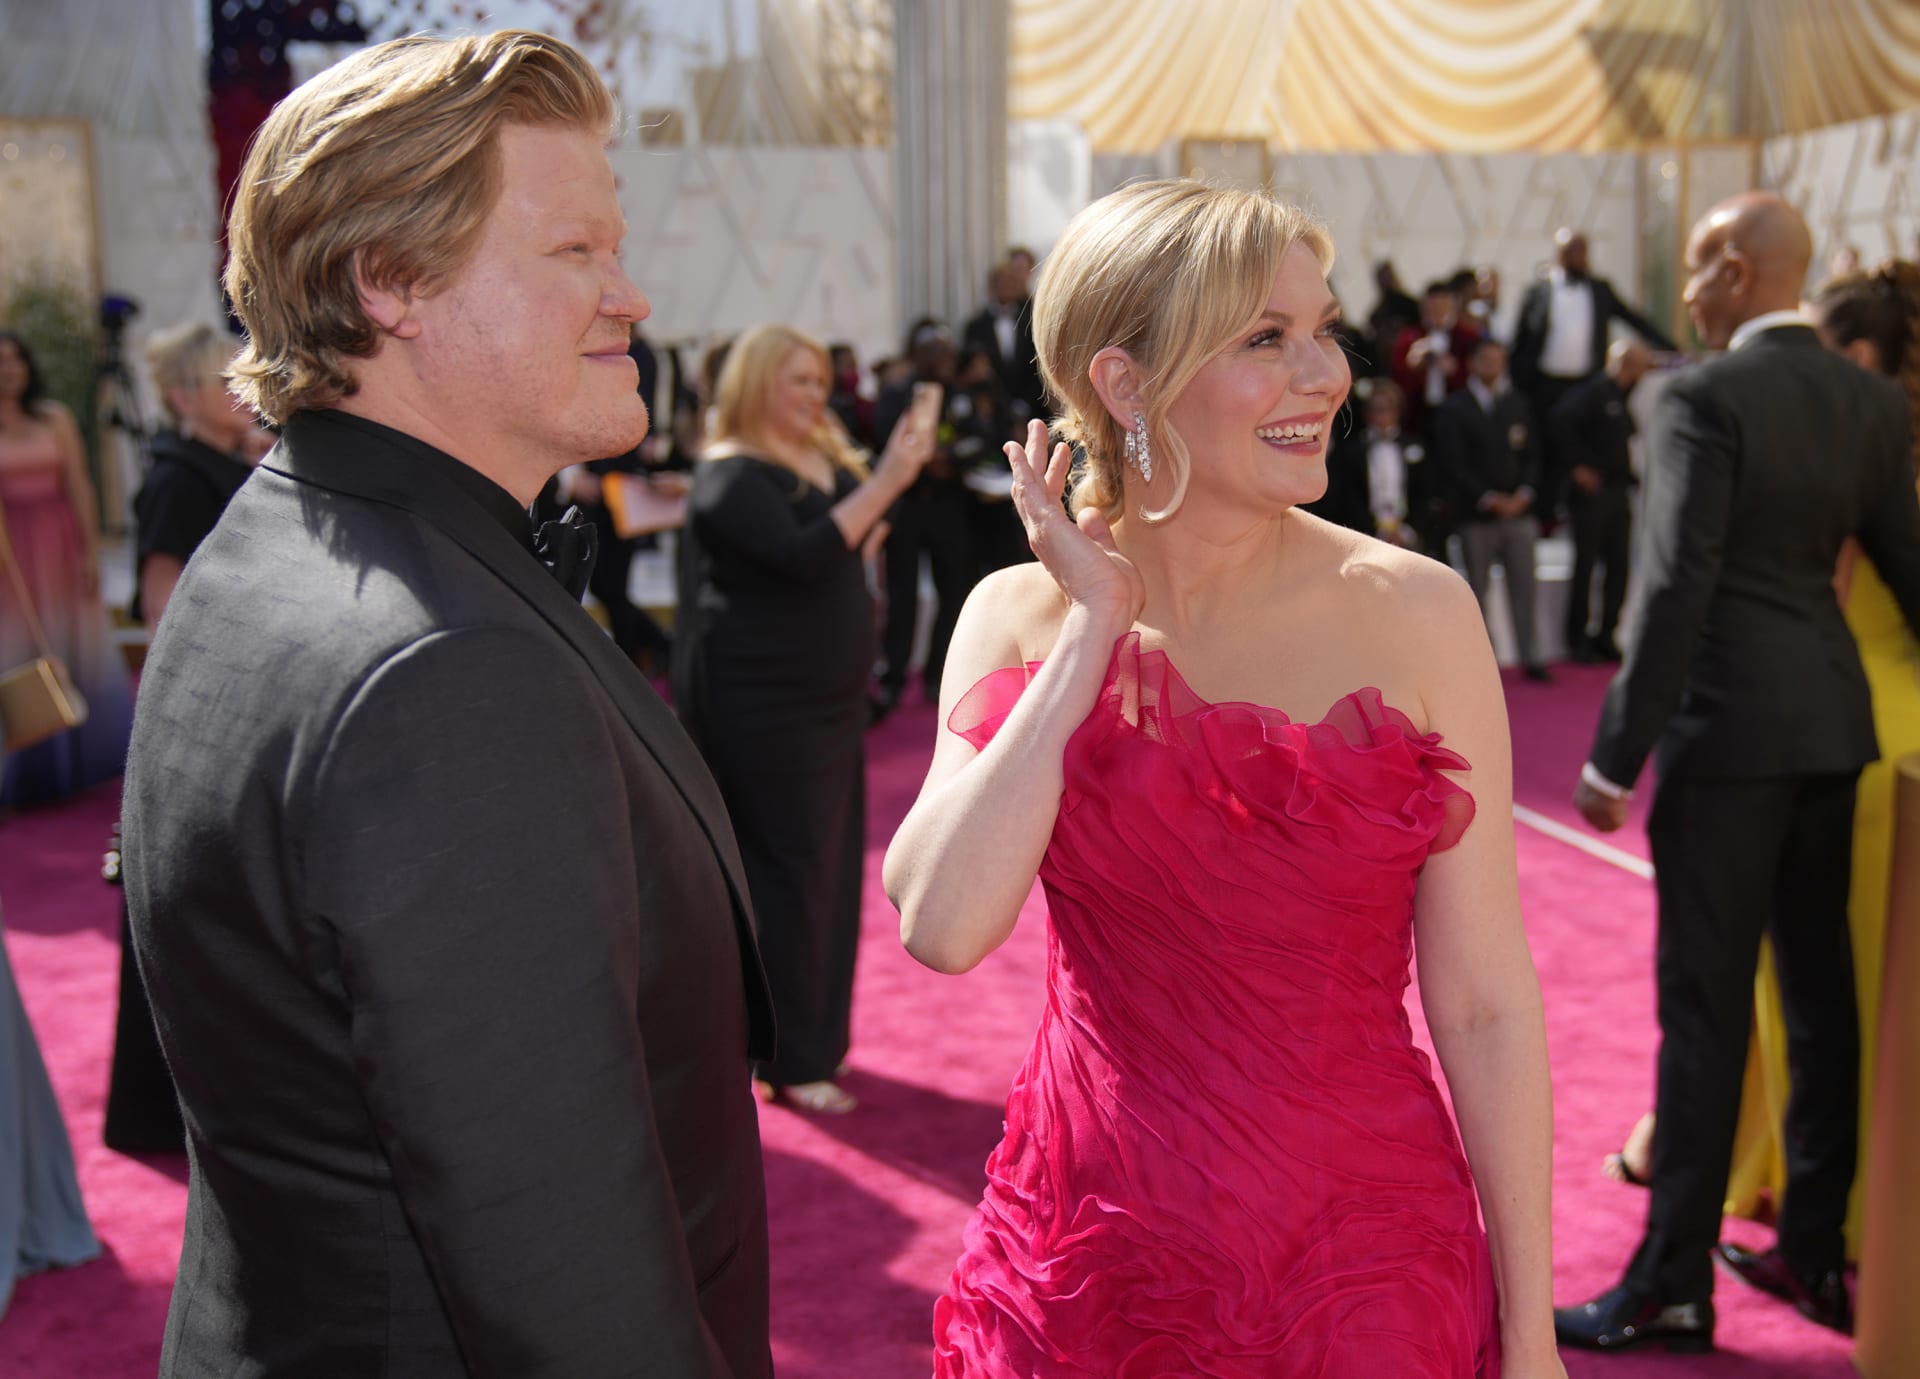 Americká herečka Kristen Dunstová, která je známá především díky roli Mary Jane v trilogii o Spider-Manovi, se na Oscarech předvedla v jasně růžové róbě. Na červeném koberci se ukázala po boku herce a partnera Jesse Plemonse.